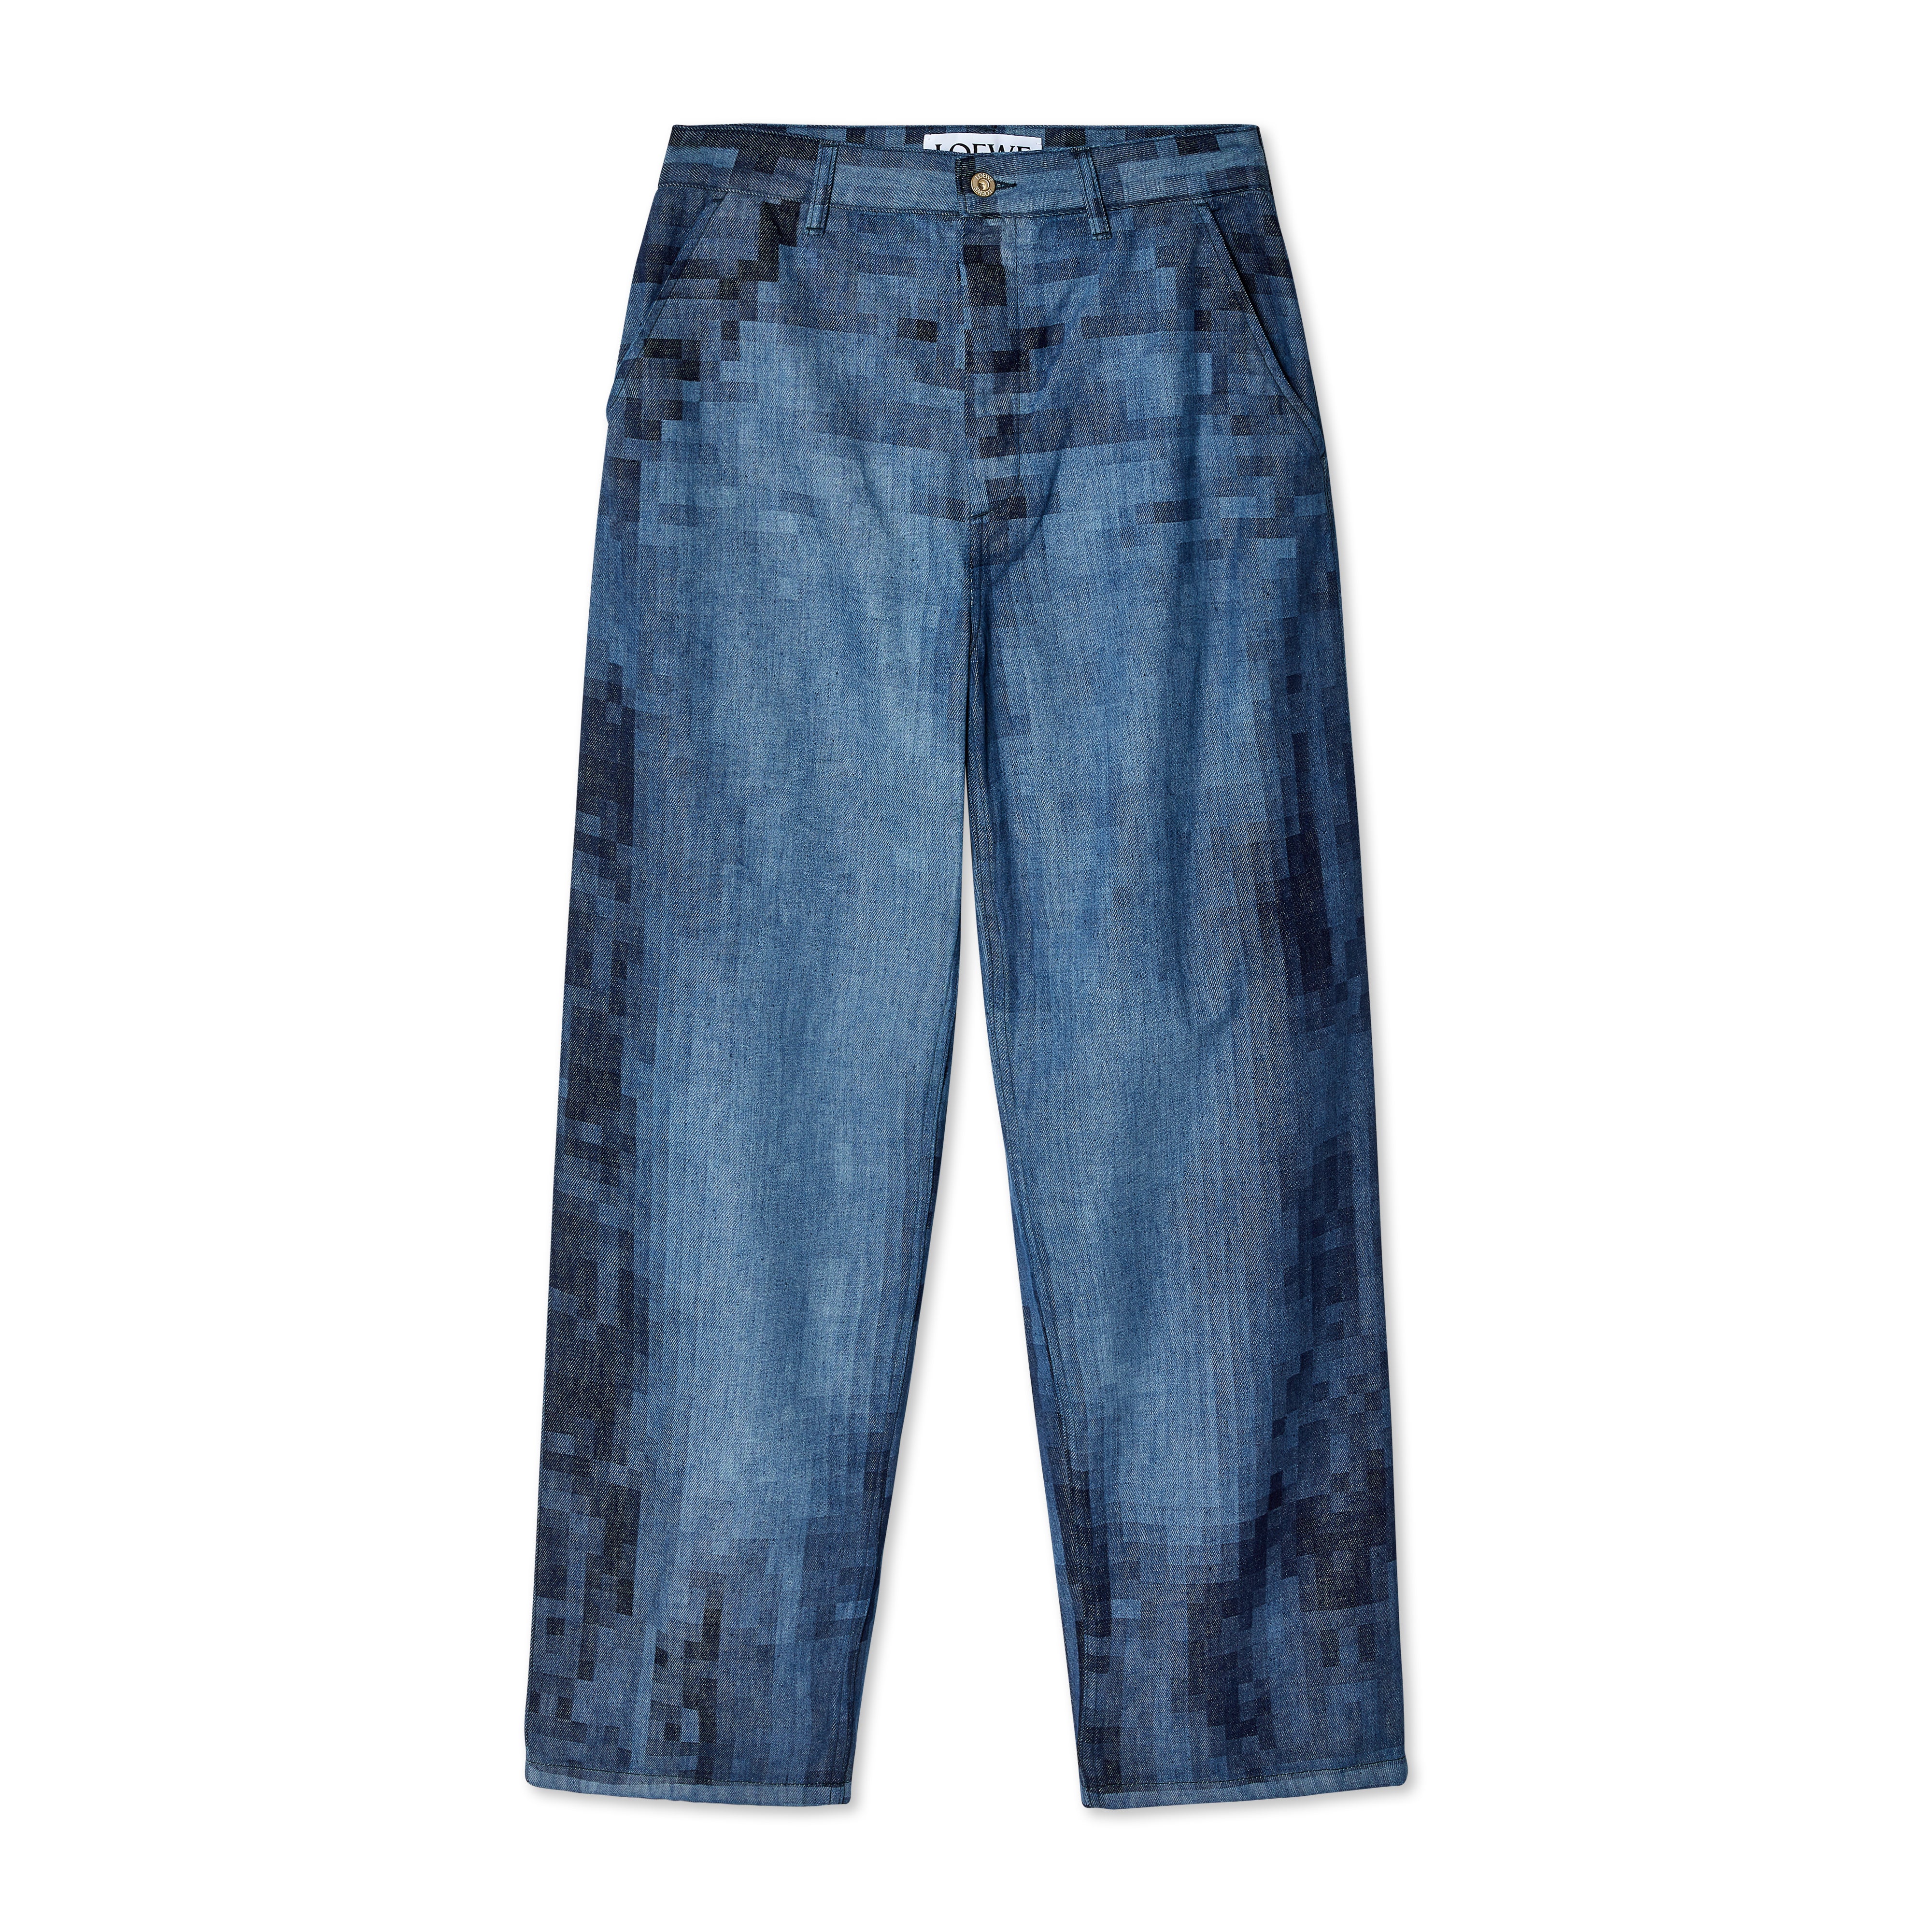 Loewe Pixel Wide-leg Mid-rise Jeans in Blue